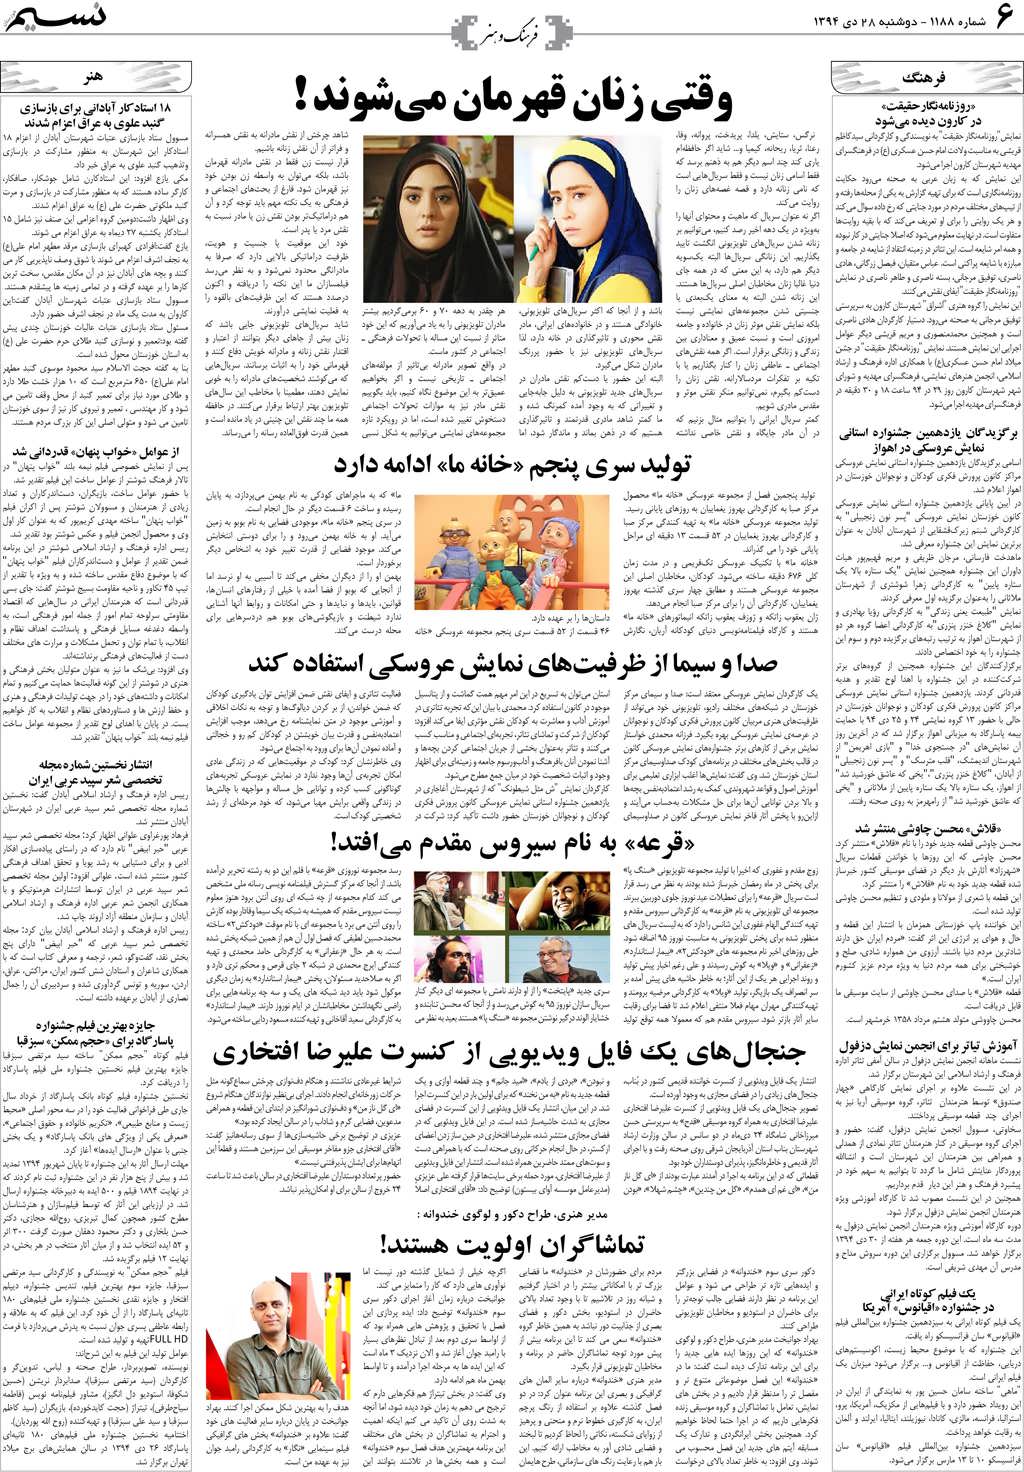 صفحه فرهنگ و هنر روزنامه نسیم شماره 1188